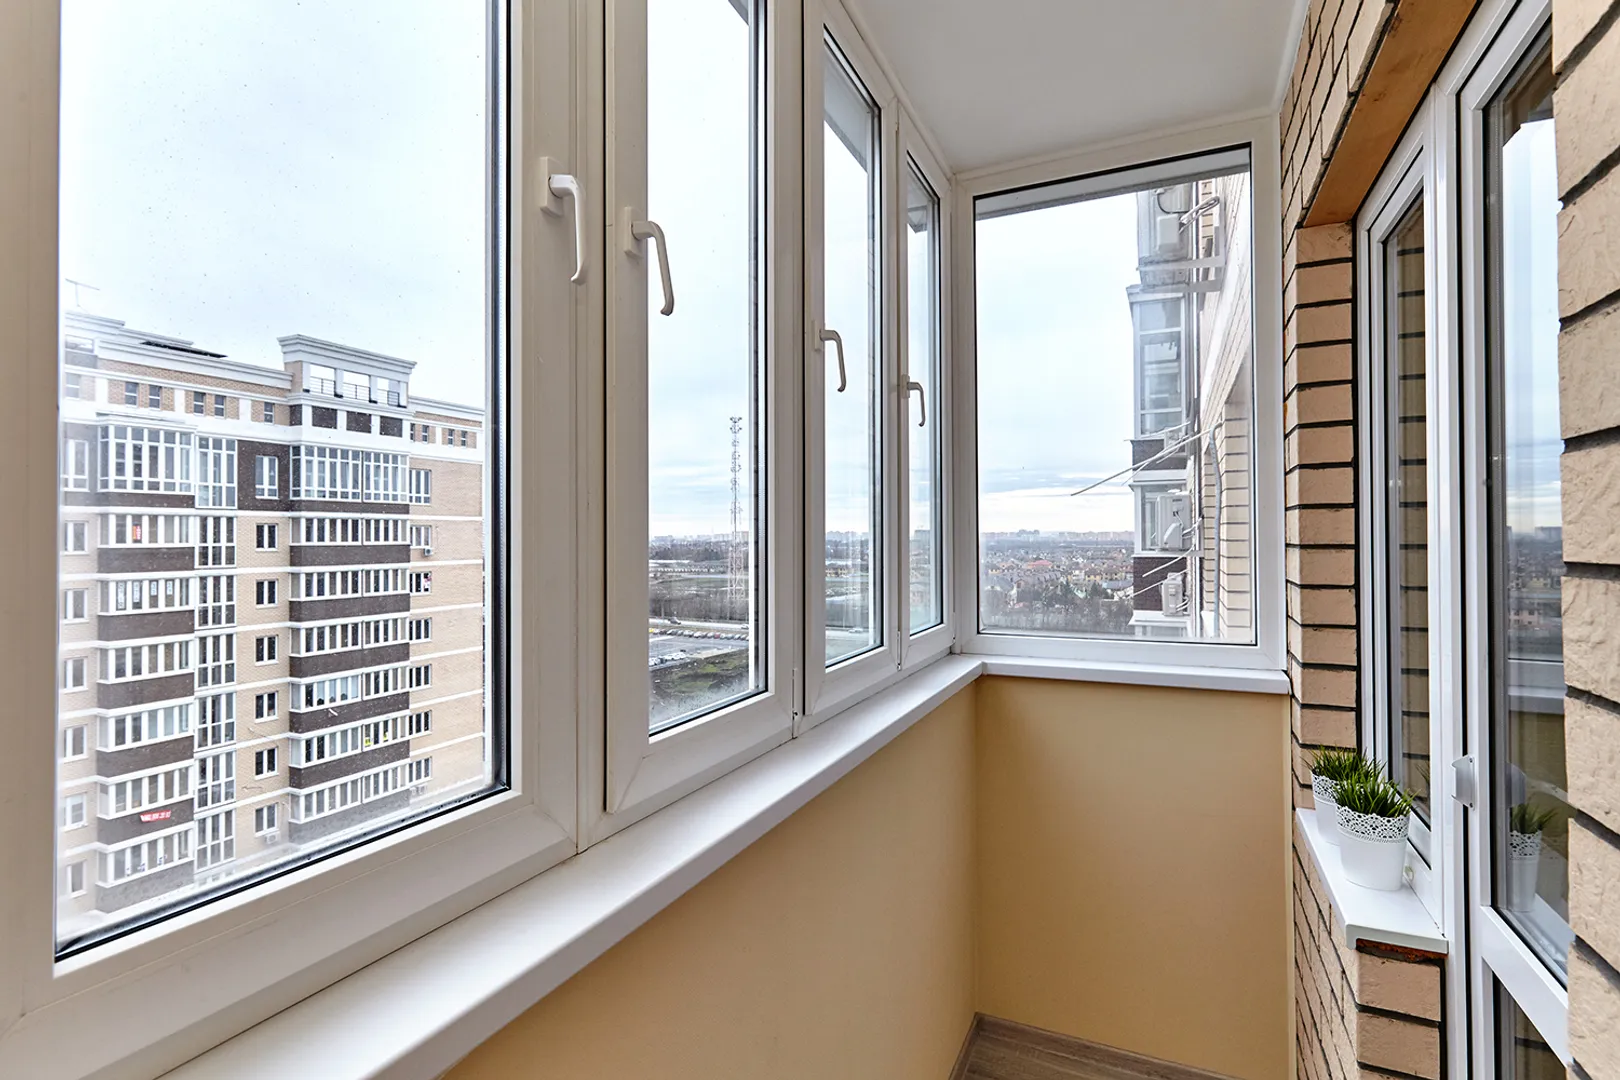 Остекленный балкон с прекрасным видом с высокого этажа